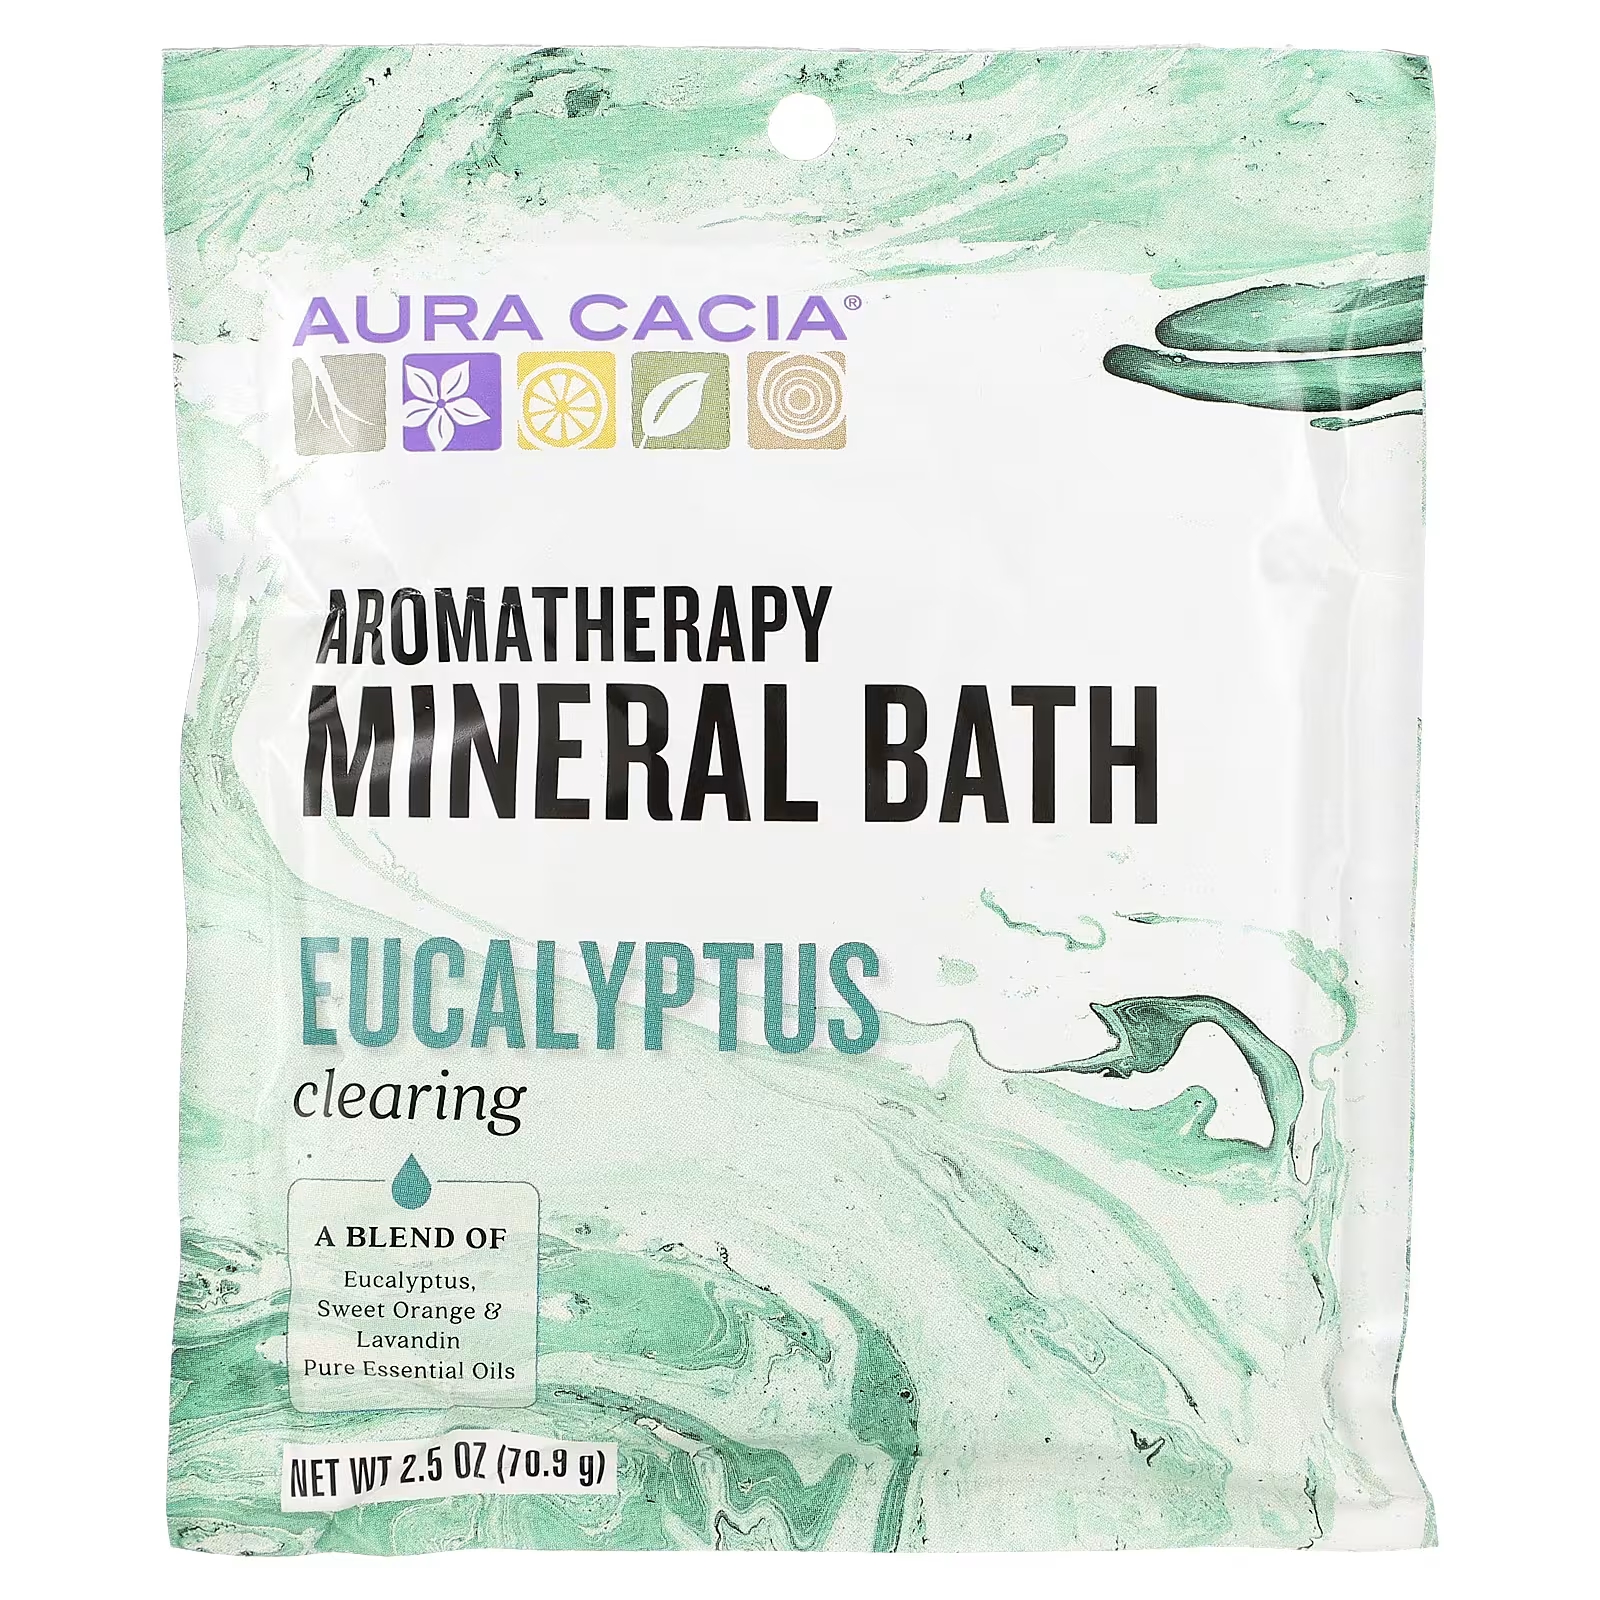 Ароматерапевтическая минеральная ванна Aura Cacia с очищающим эвкалиптом